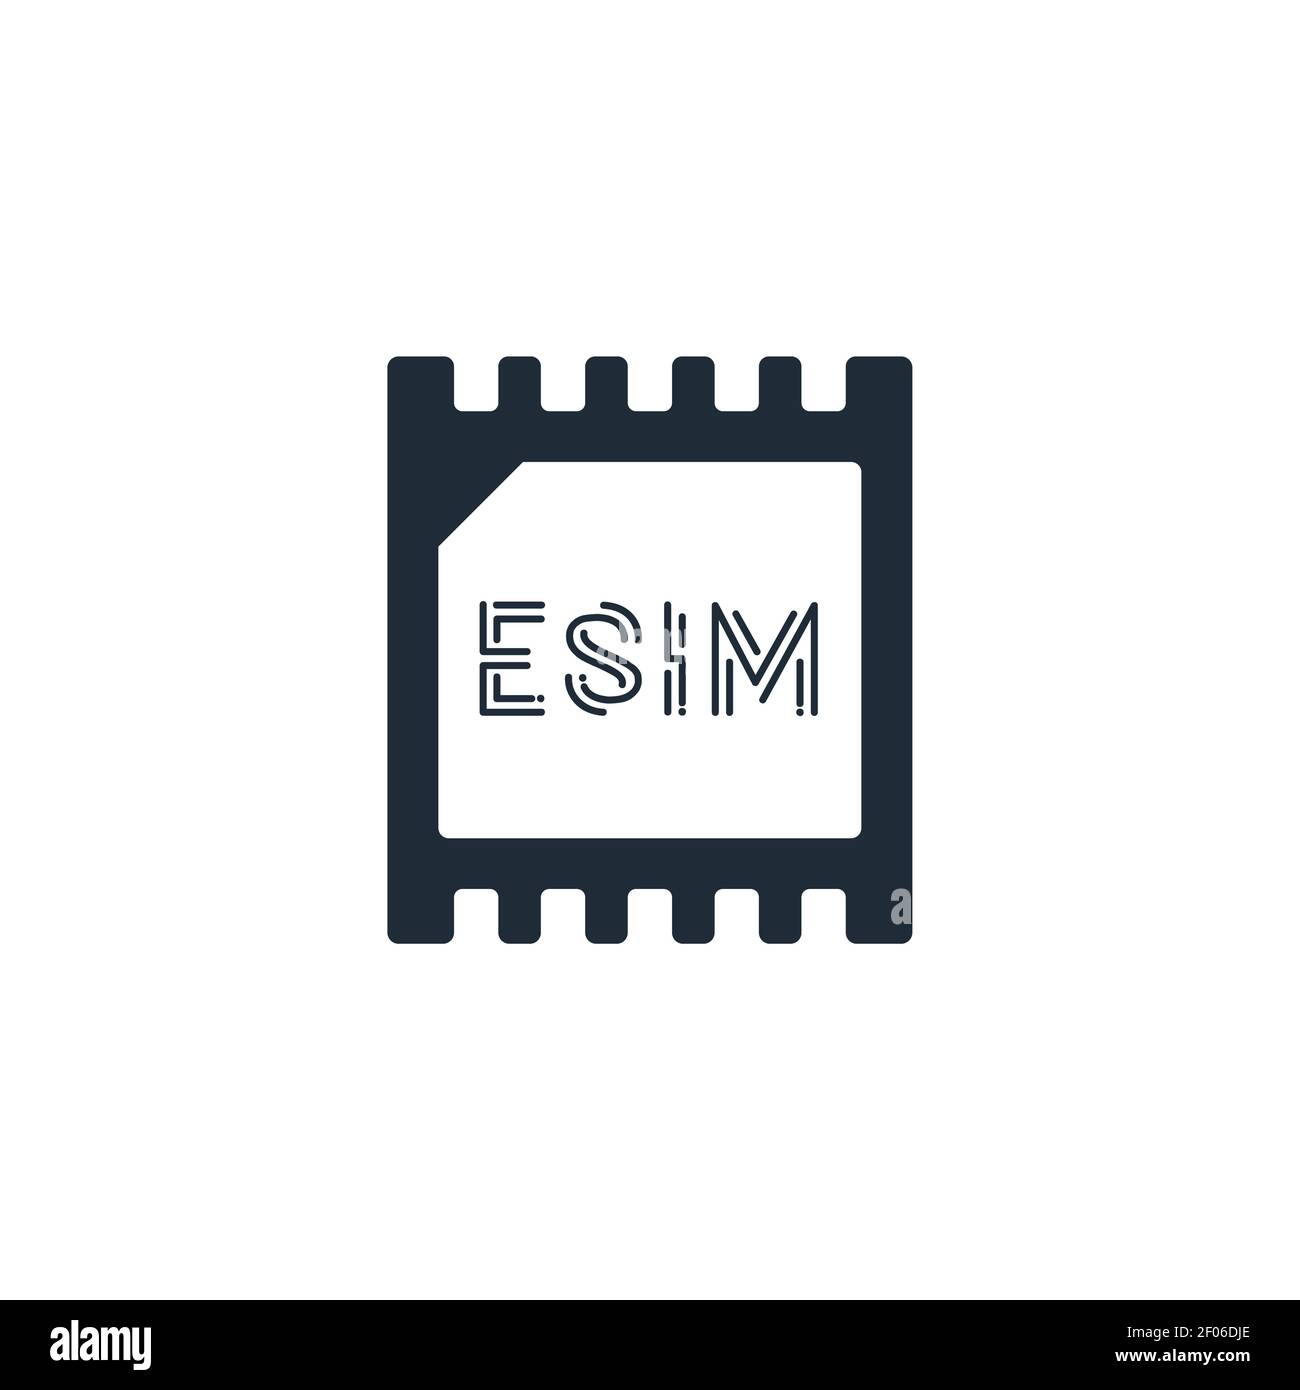 Icona di concetto della scheda chip eSIM. Concetto intelligente della tecnologia mobile cellulare della scheda sim integrata Illustrazione Vettoriale